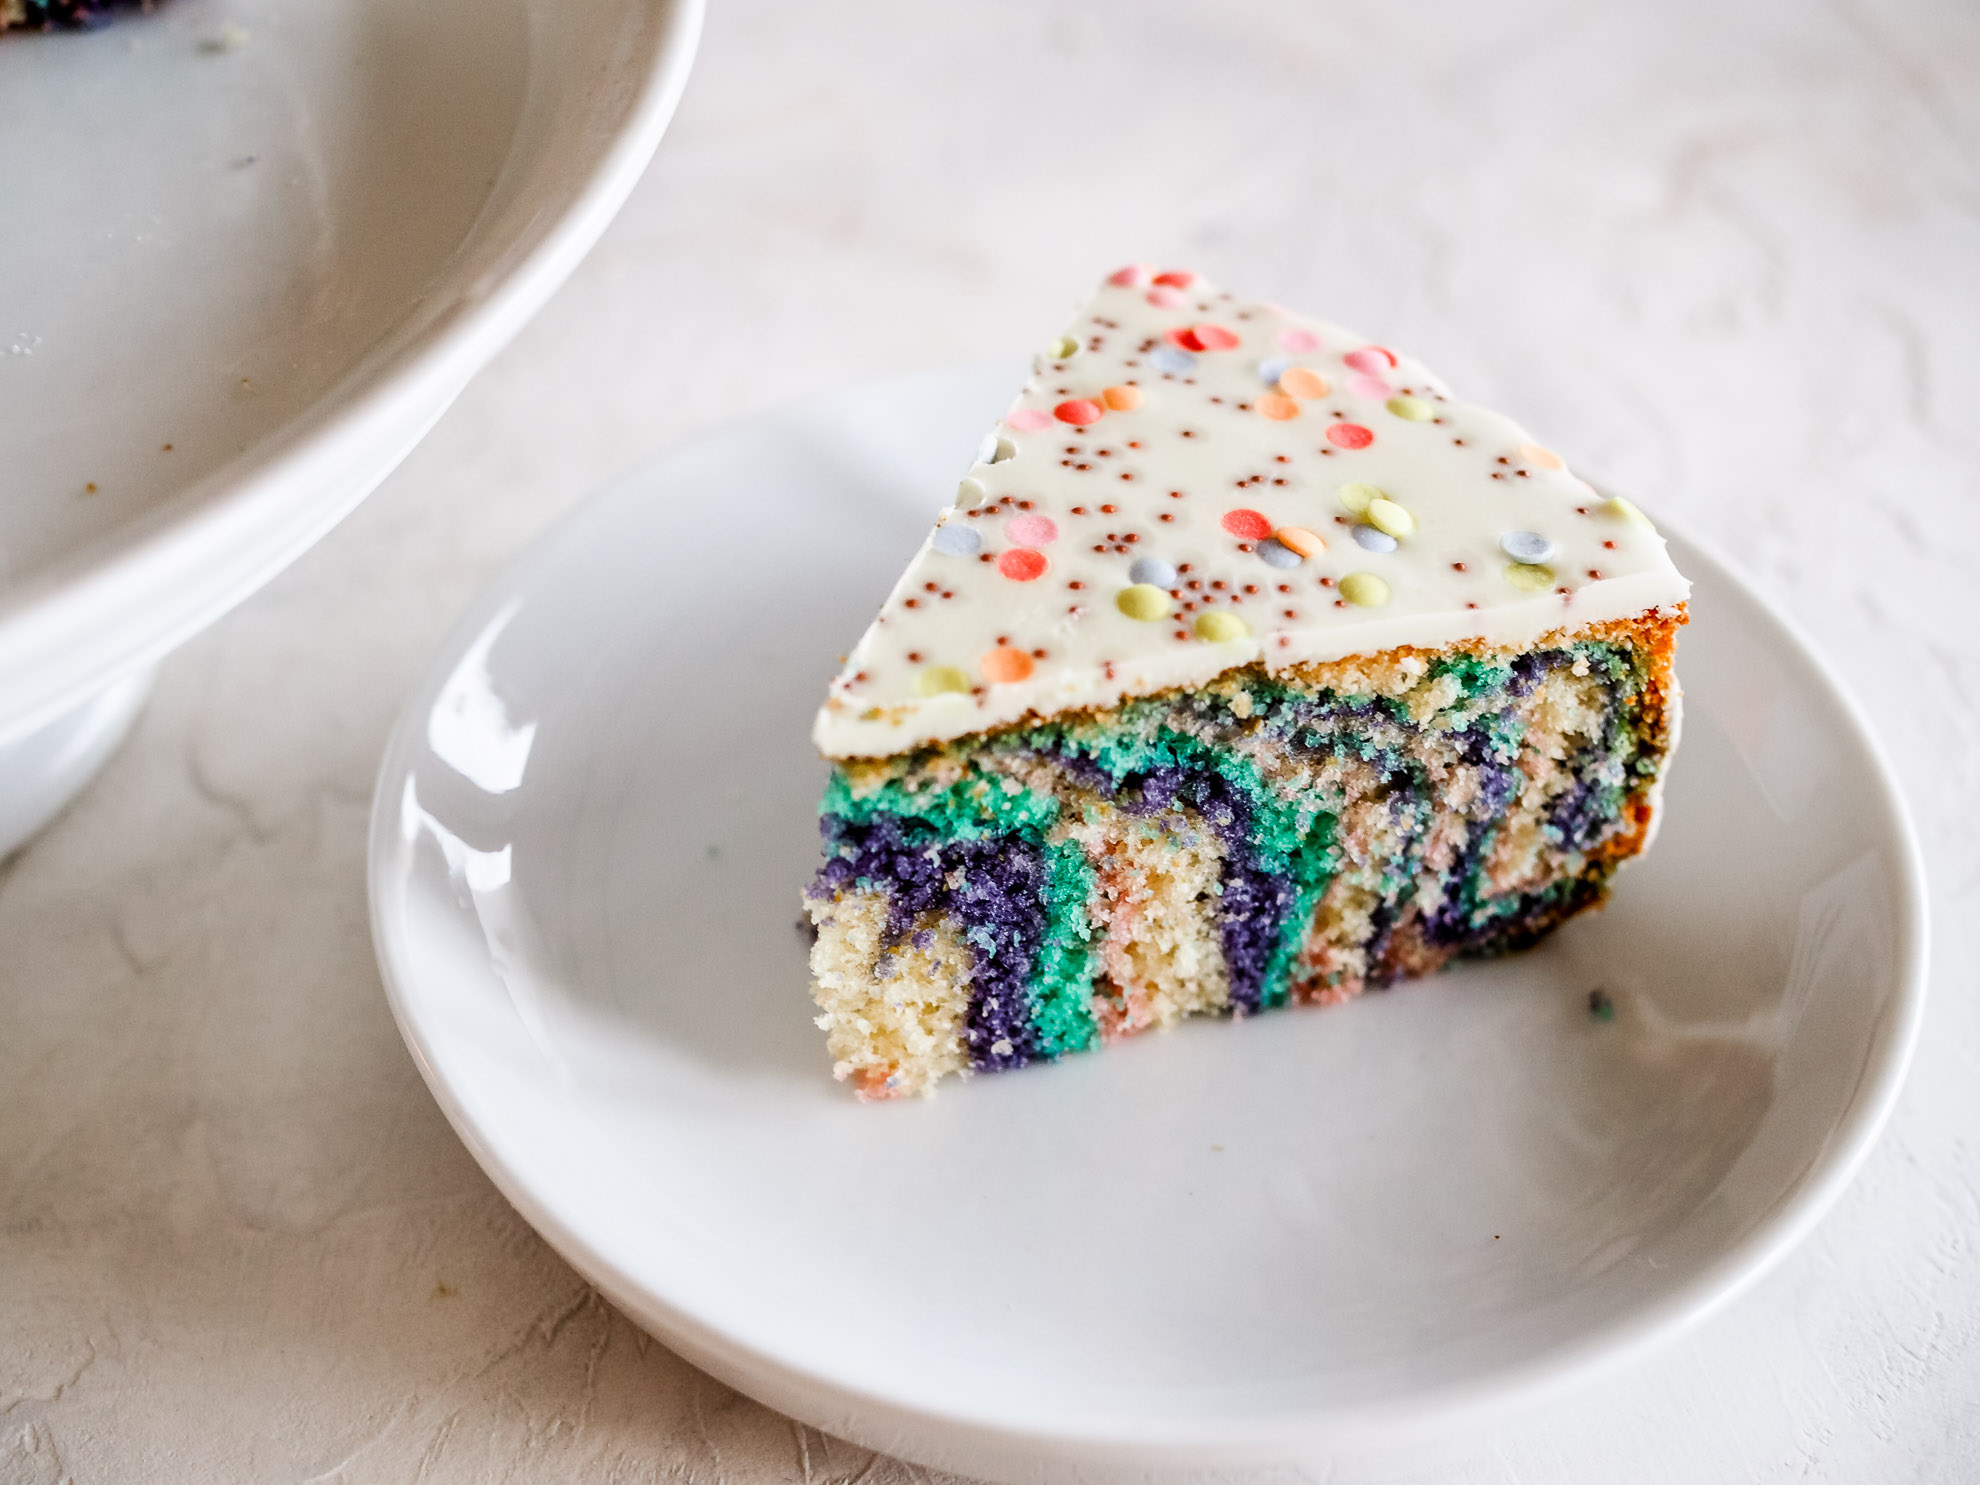 lifesteilblog bodyreset gesundesessen health glutenfree sugarfree rainbowcake